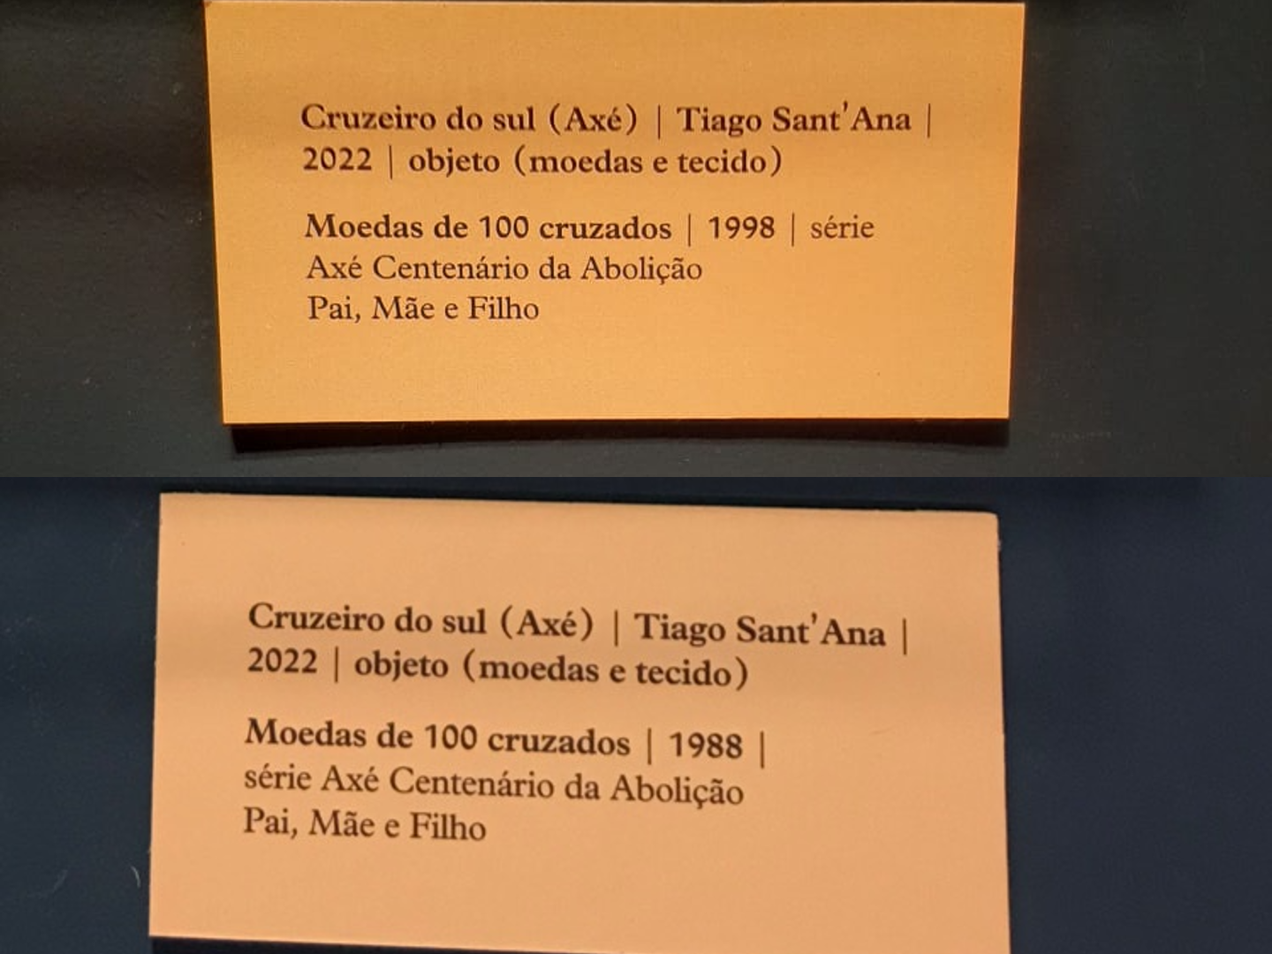 Placa em exposição no CCBB do Rio com erro (acima) e posteriormente corrigido (abaixo)